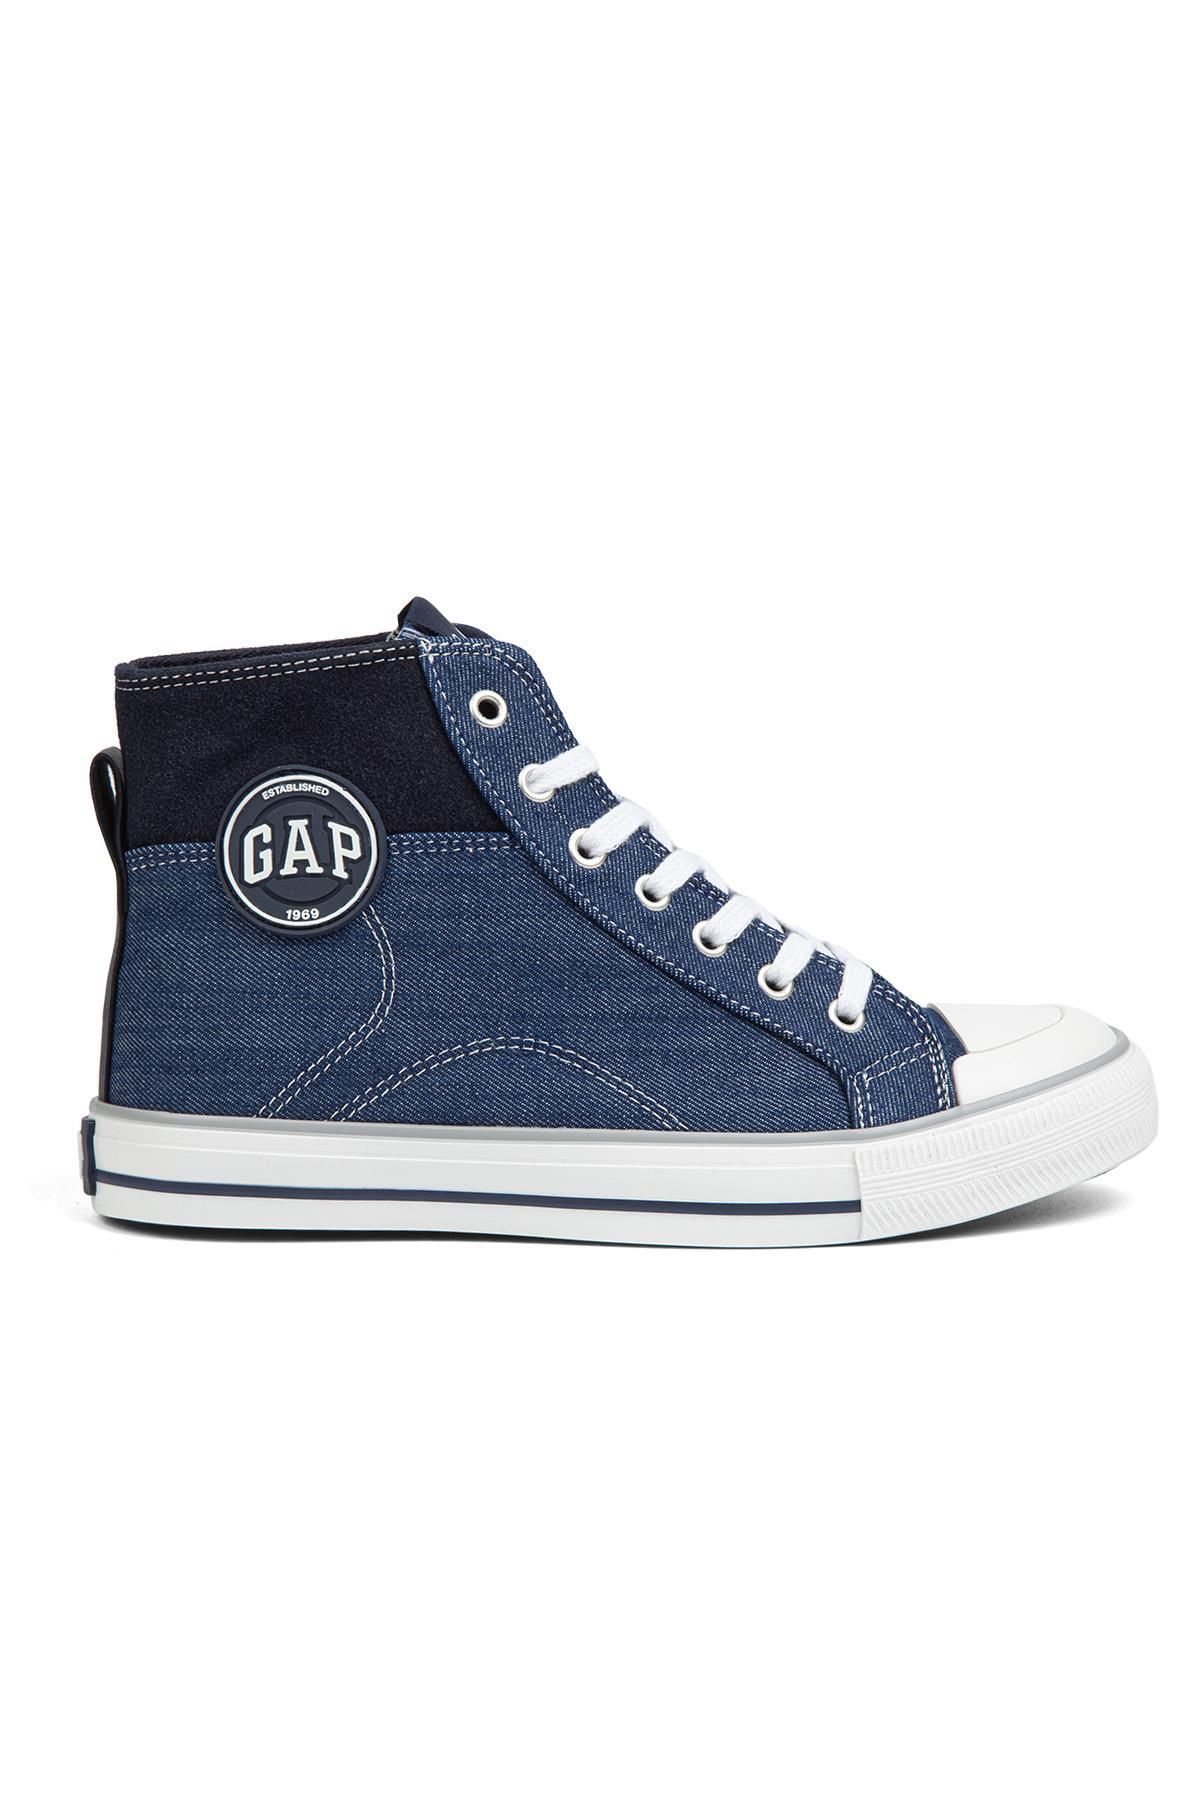 GAP ® | GP-1026 Kot Lacivert-Kadın Spor Ayakkabı